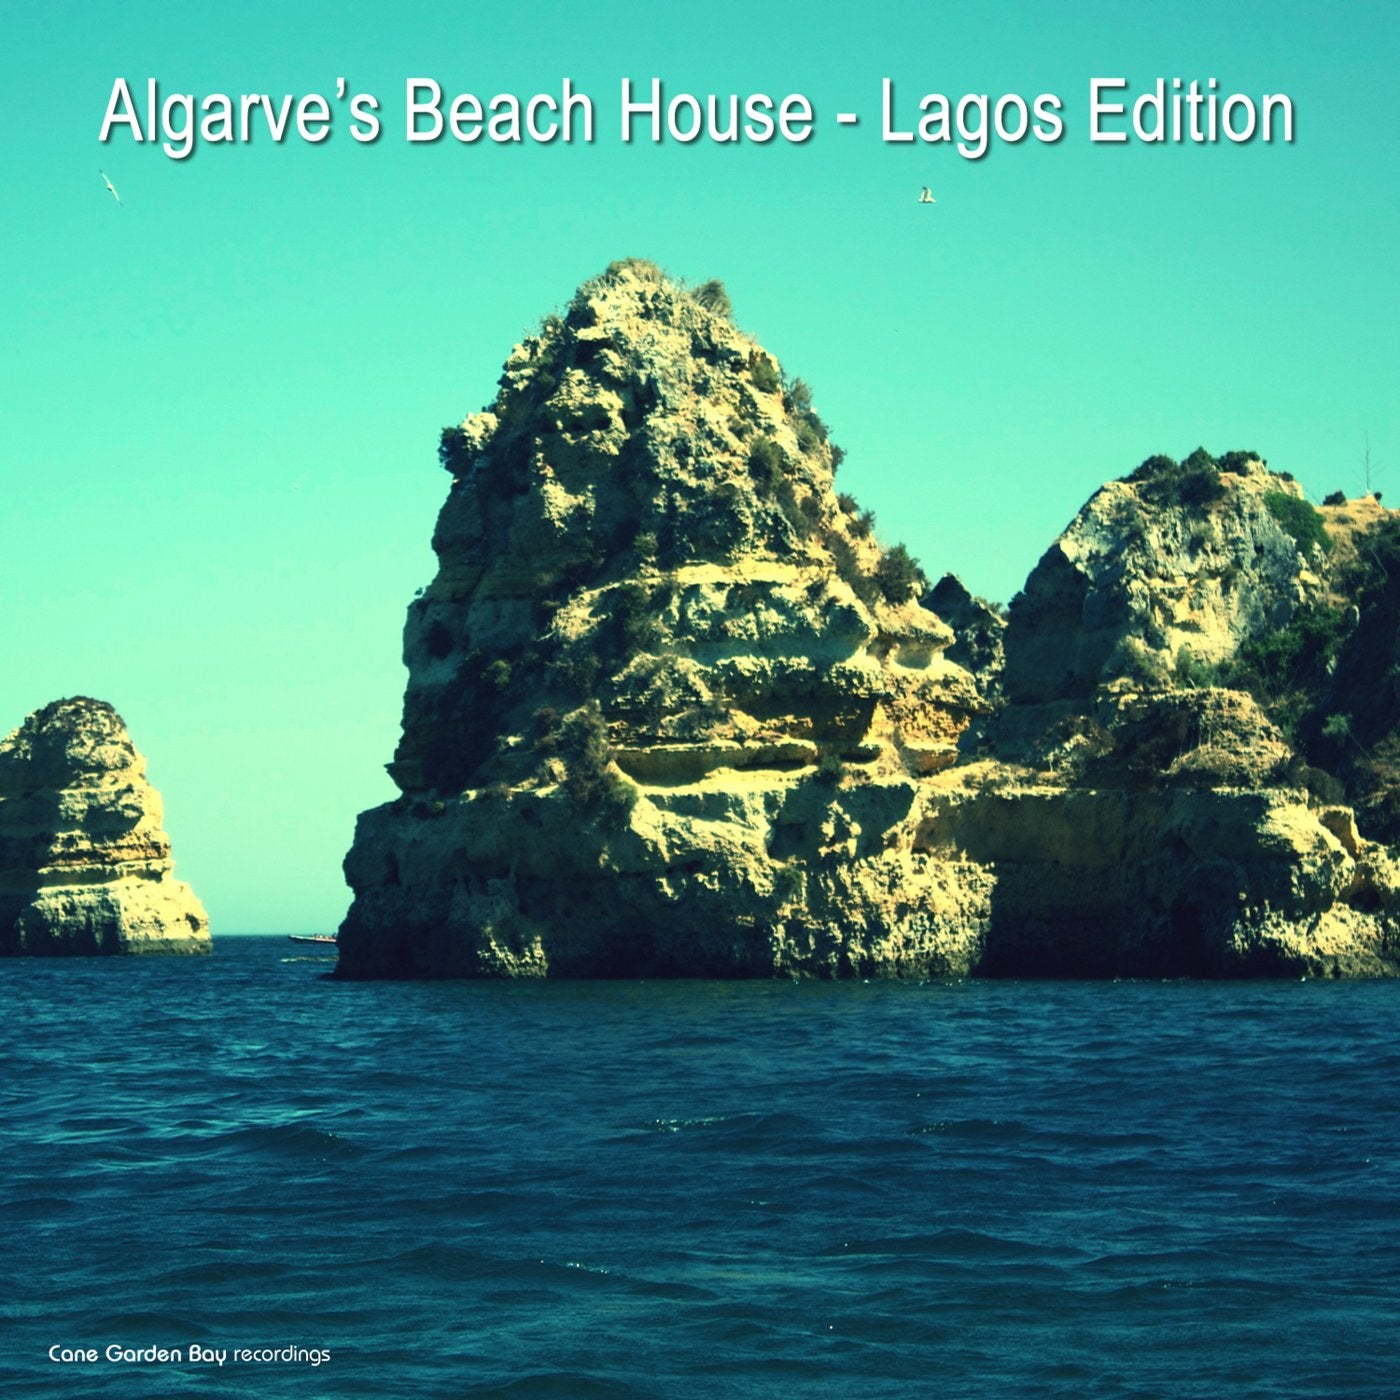 Algarve's Beach House - Lagos Edition